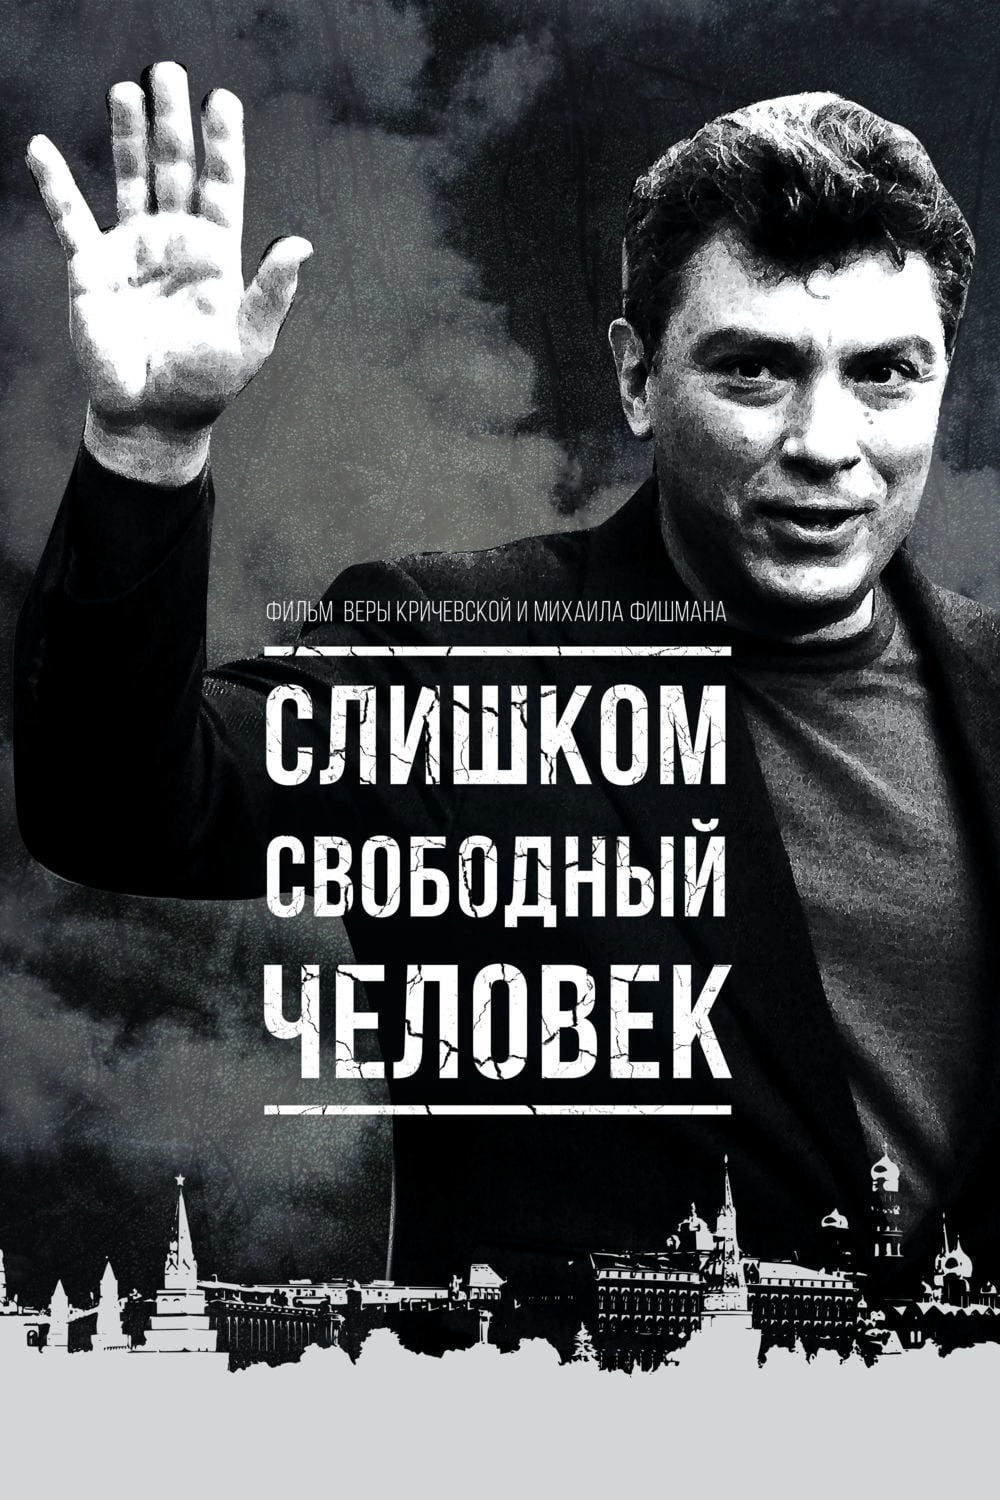 Boris Nemtsov - un visionnaire assassiné